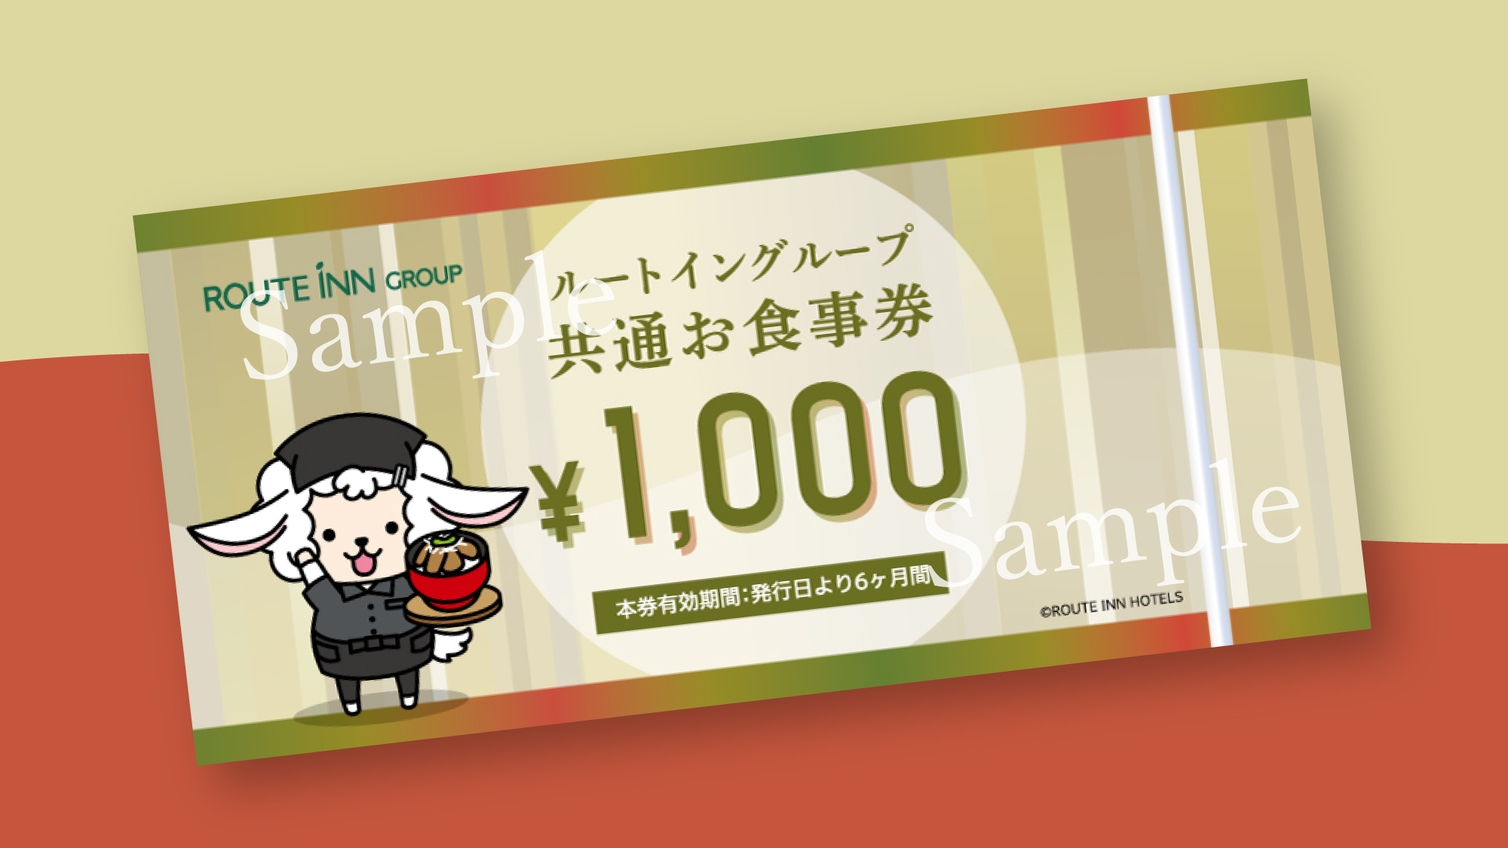 【朝食付】ルートイングループ共通お食事券1000円付プラン